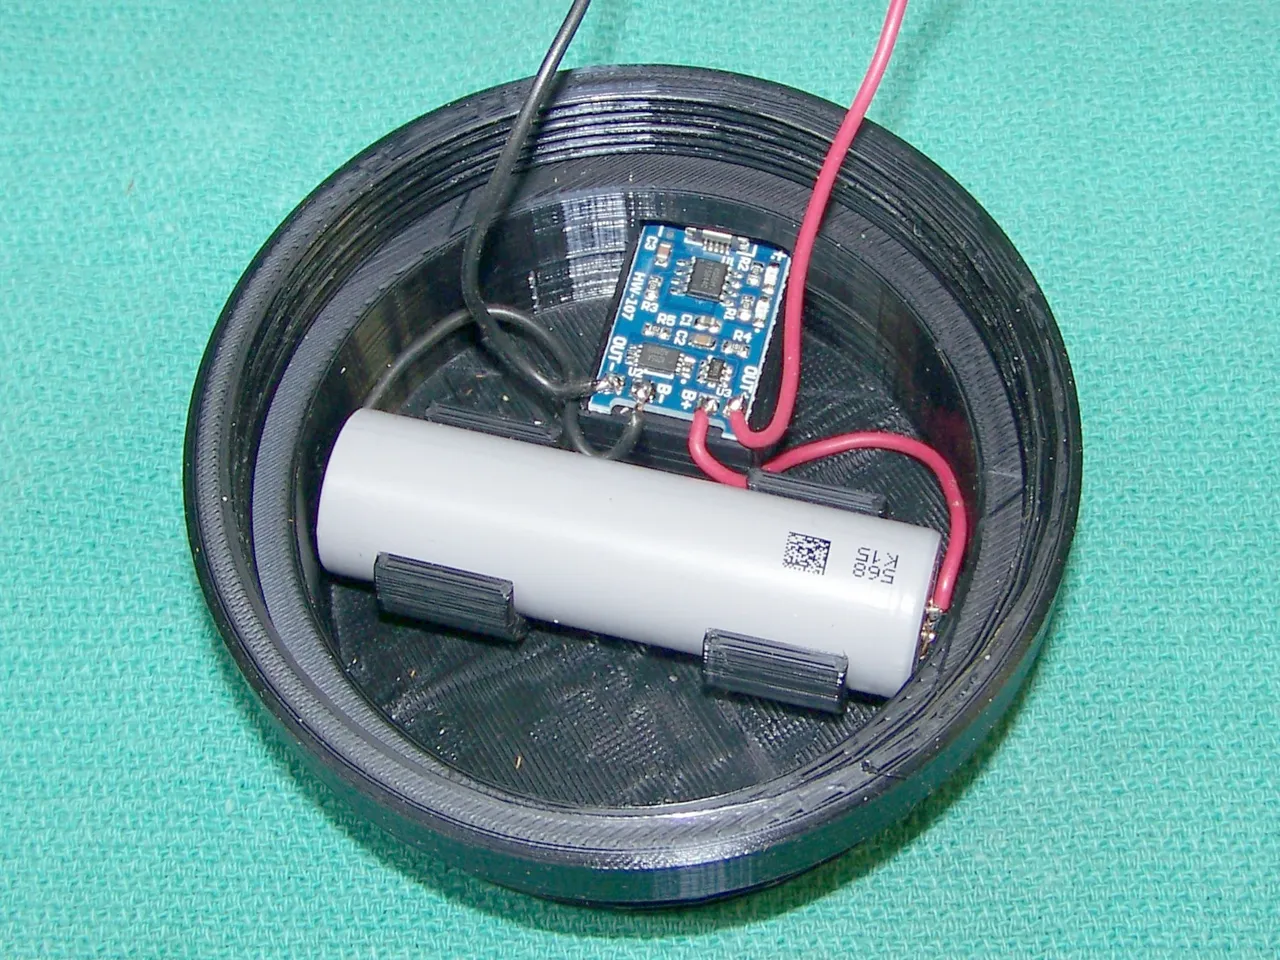 Luminar Outdoor Pop Up Lantern Battery Powered 